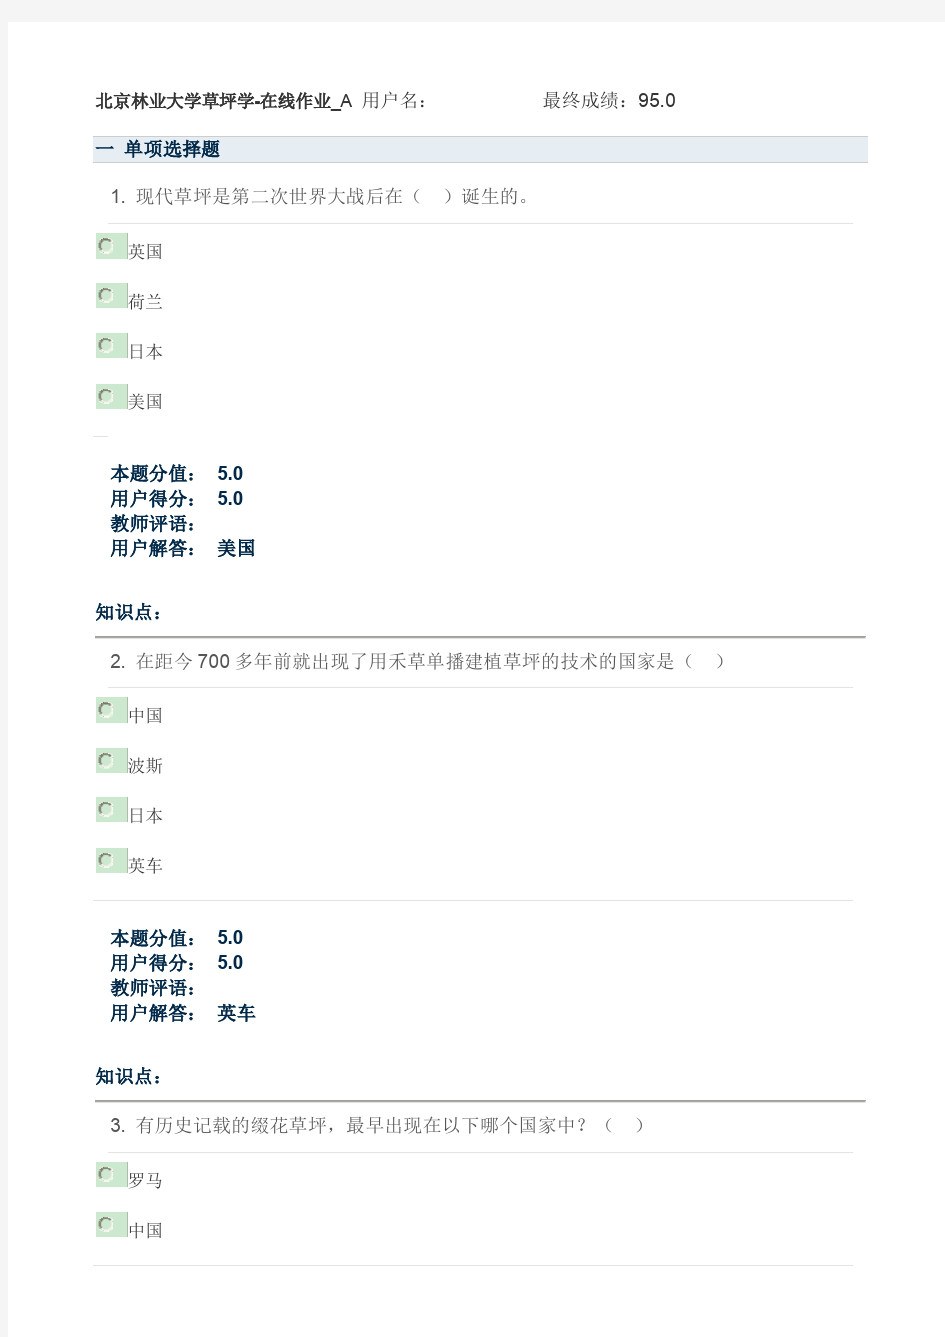 北京林业大学草坪学-在线课程作业(直接打印版)